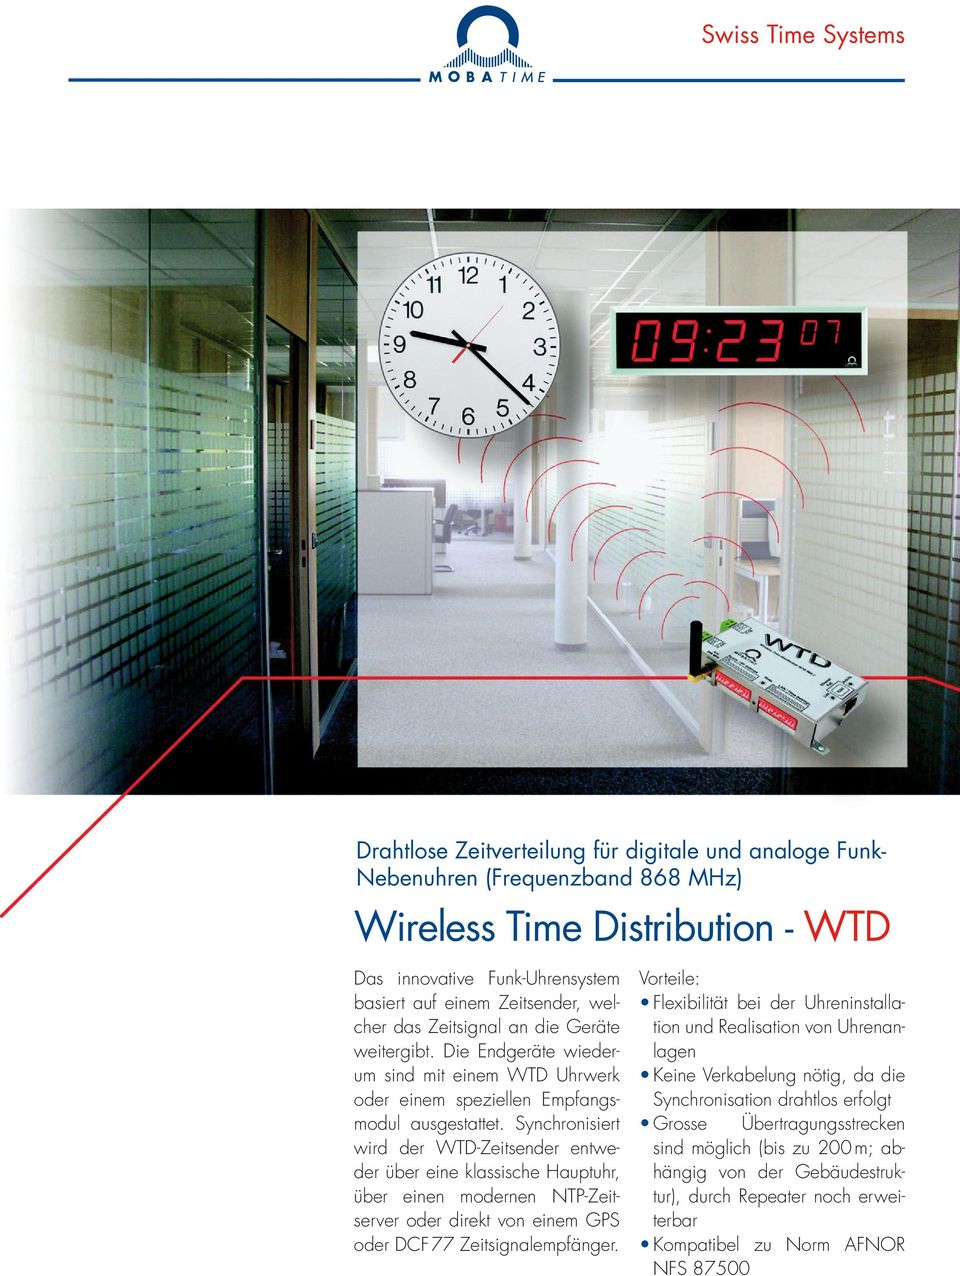 Synchronisiert wird der WTD-Zeitsender entweder über eine klassische Hauptuhr, über einen modernen NTP-Zeitserver oder direkt von einem GPS oder DCF 77 Zeitsignalempfänger.